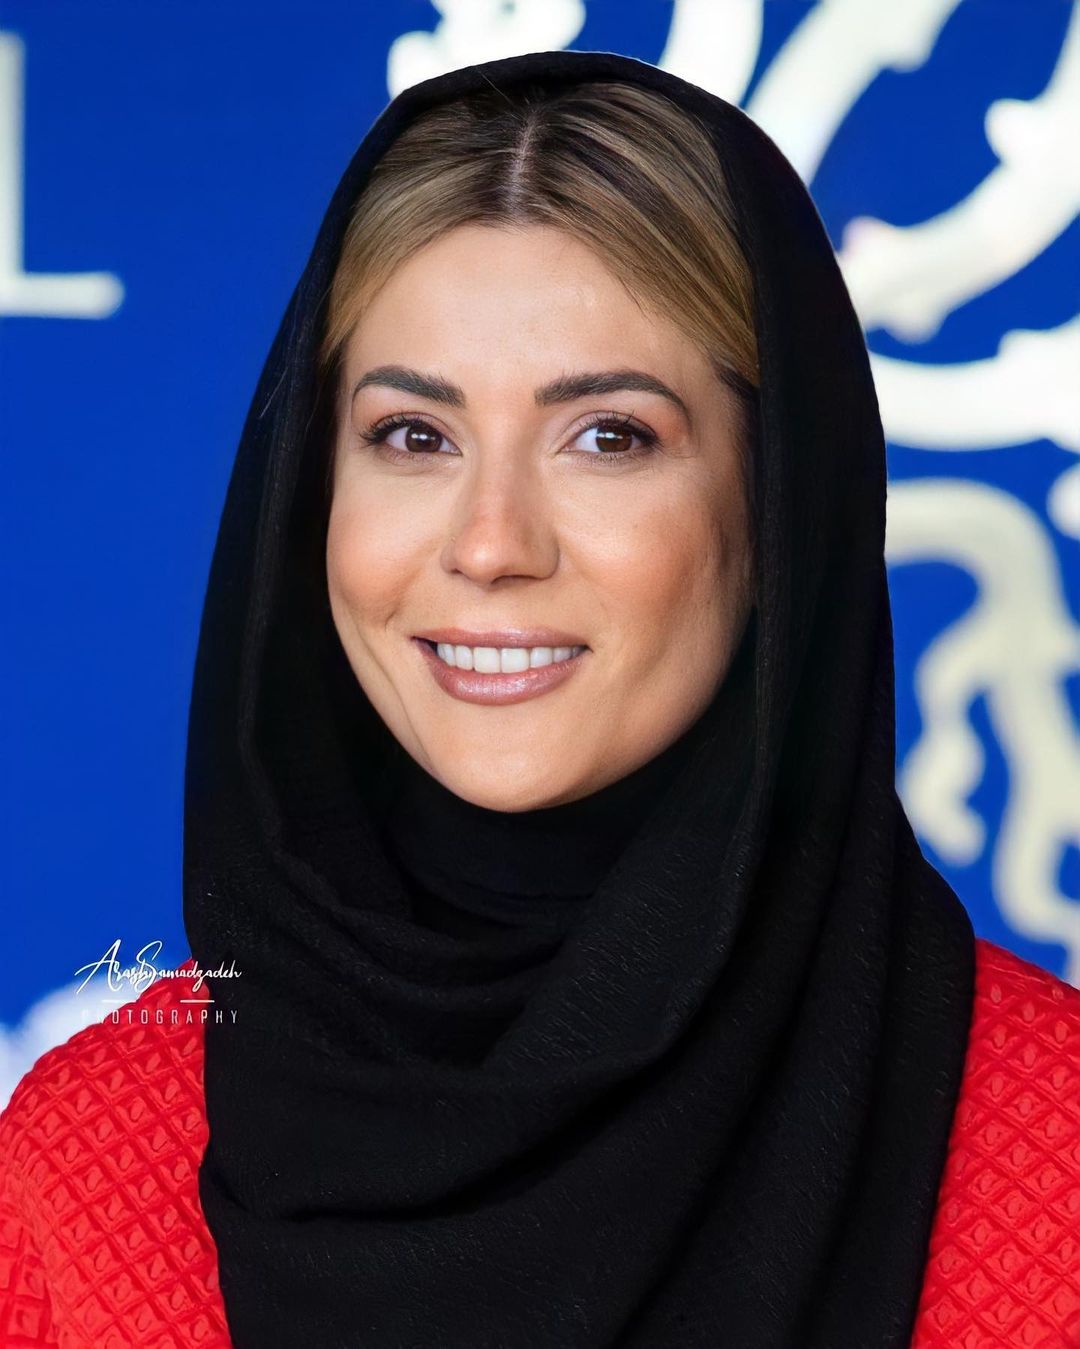 تغییر چهره سارا بهرامی در جشنواره فجر مورد توجه کاربران قرار گرفته است.